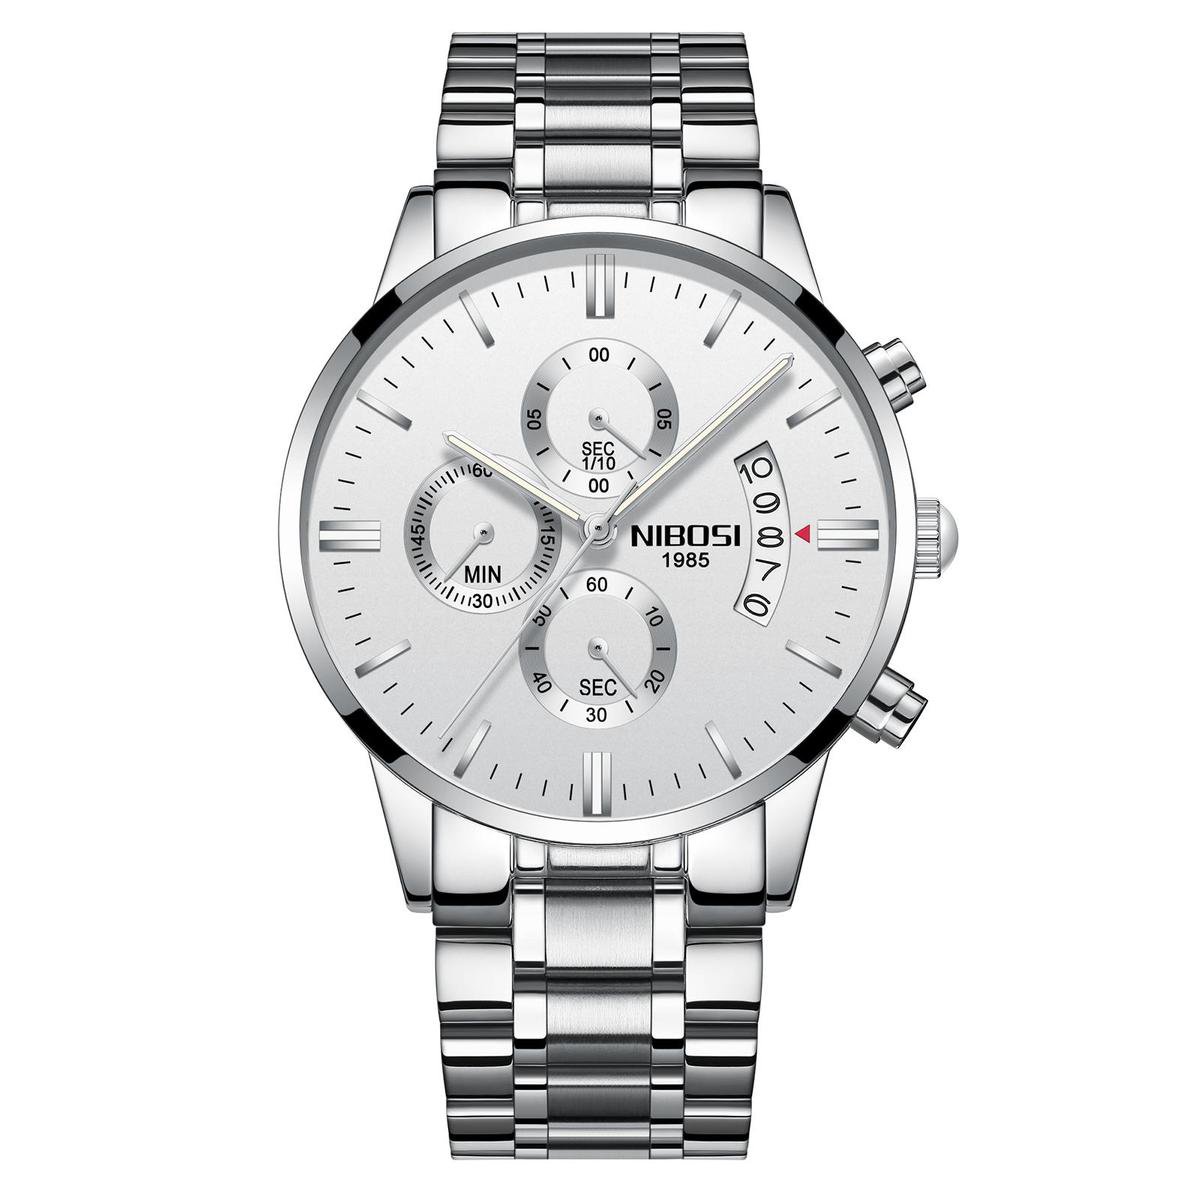 NIBOSI Horloges voor mannen - Horloge mannen - Luxe Zilver-Wit Design - Heren horloge - Ø 42 mm - Zilver-Wit - Roestvrij Staal - Waterdicht tot 3 bar - Chronograaf - Geschenkset met verstelbare pin